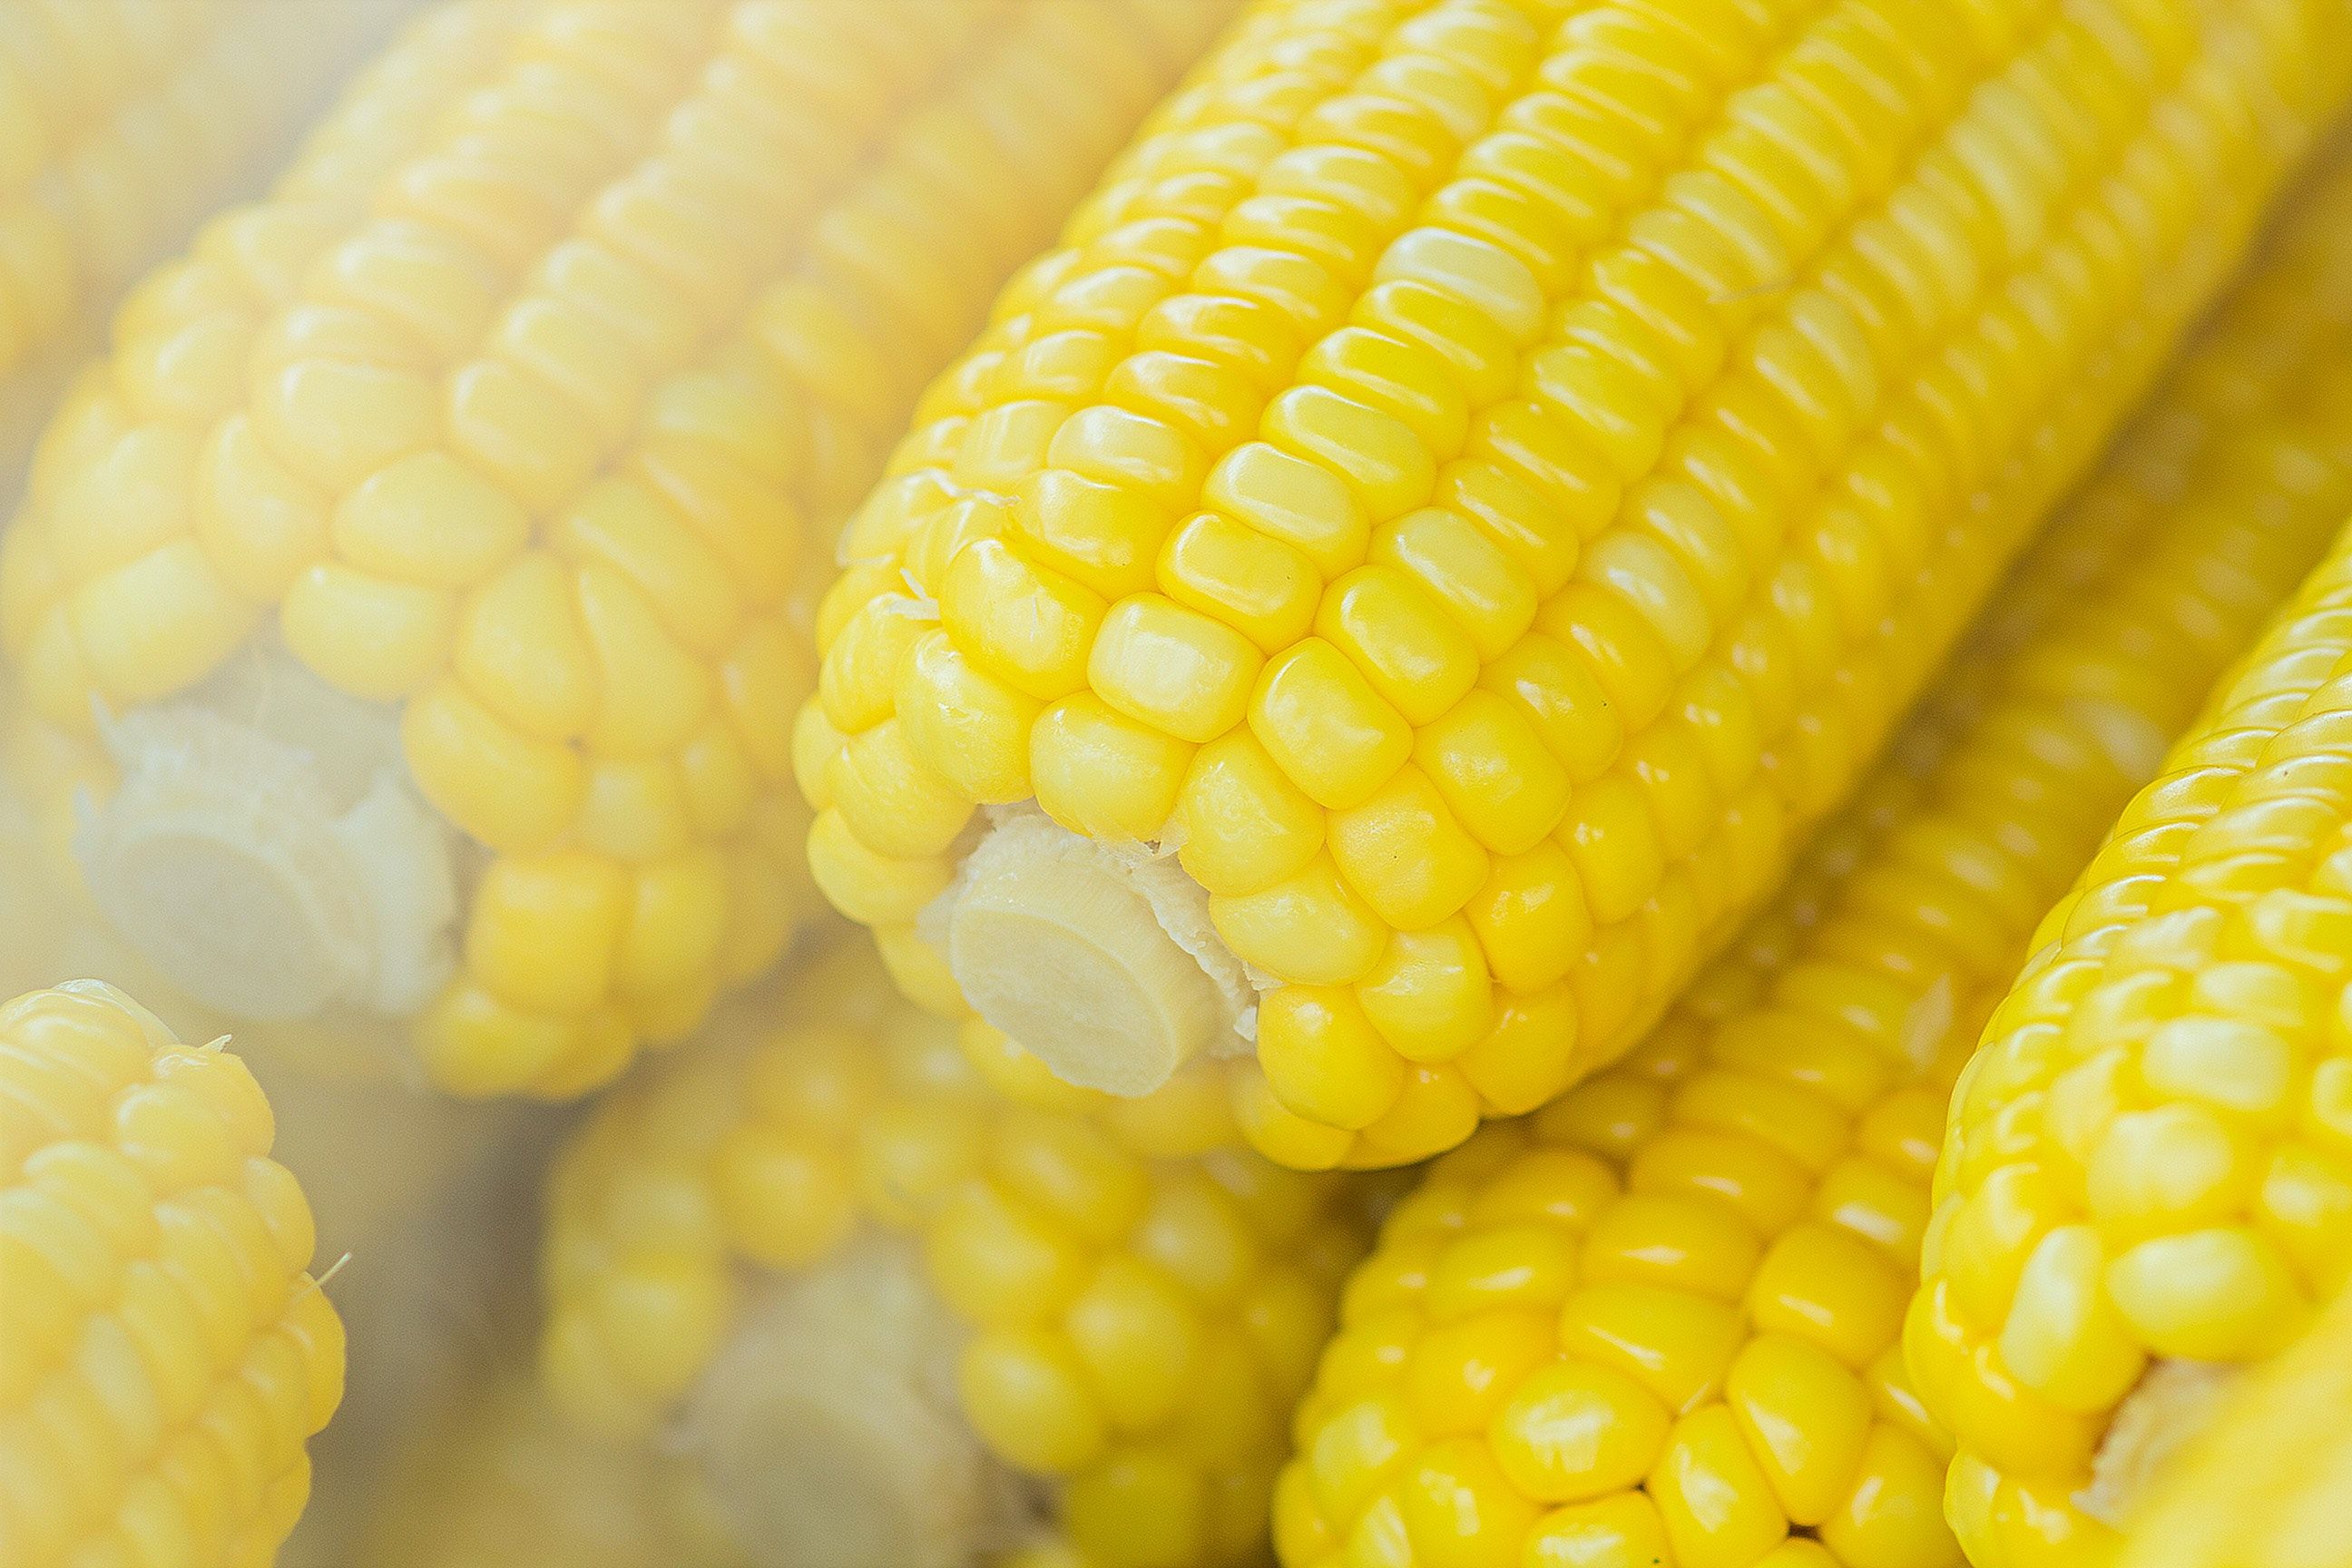 Кукуруза в больших количествах может навредить